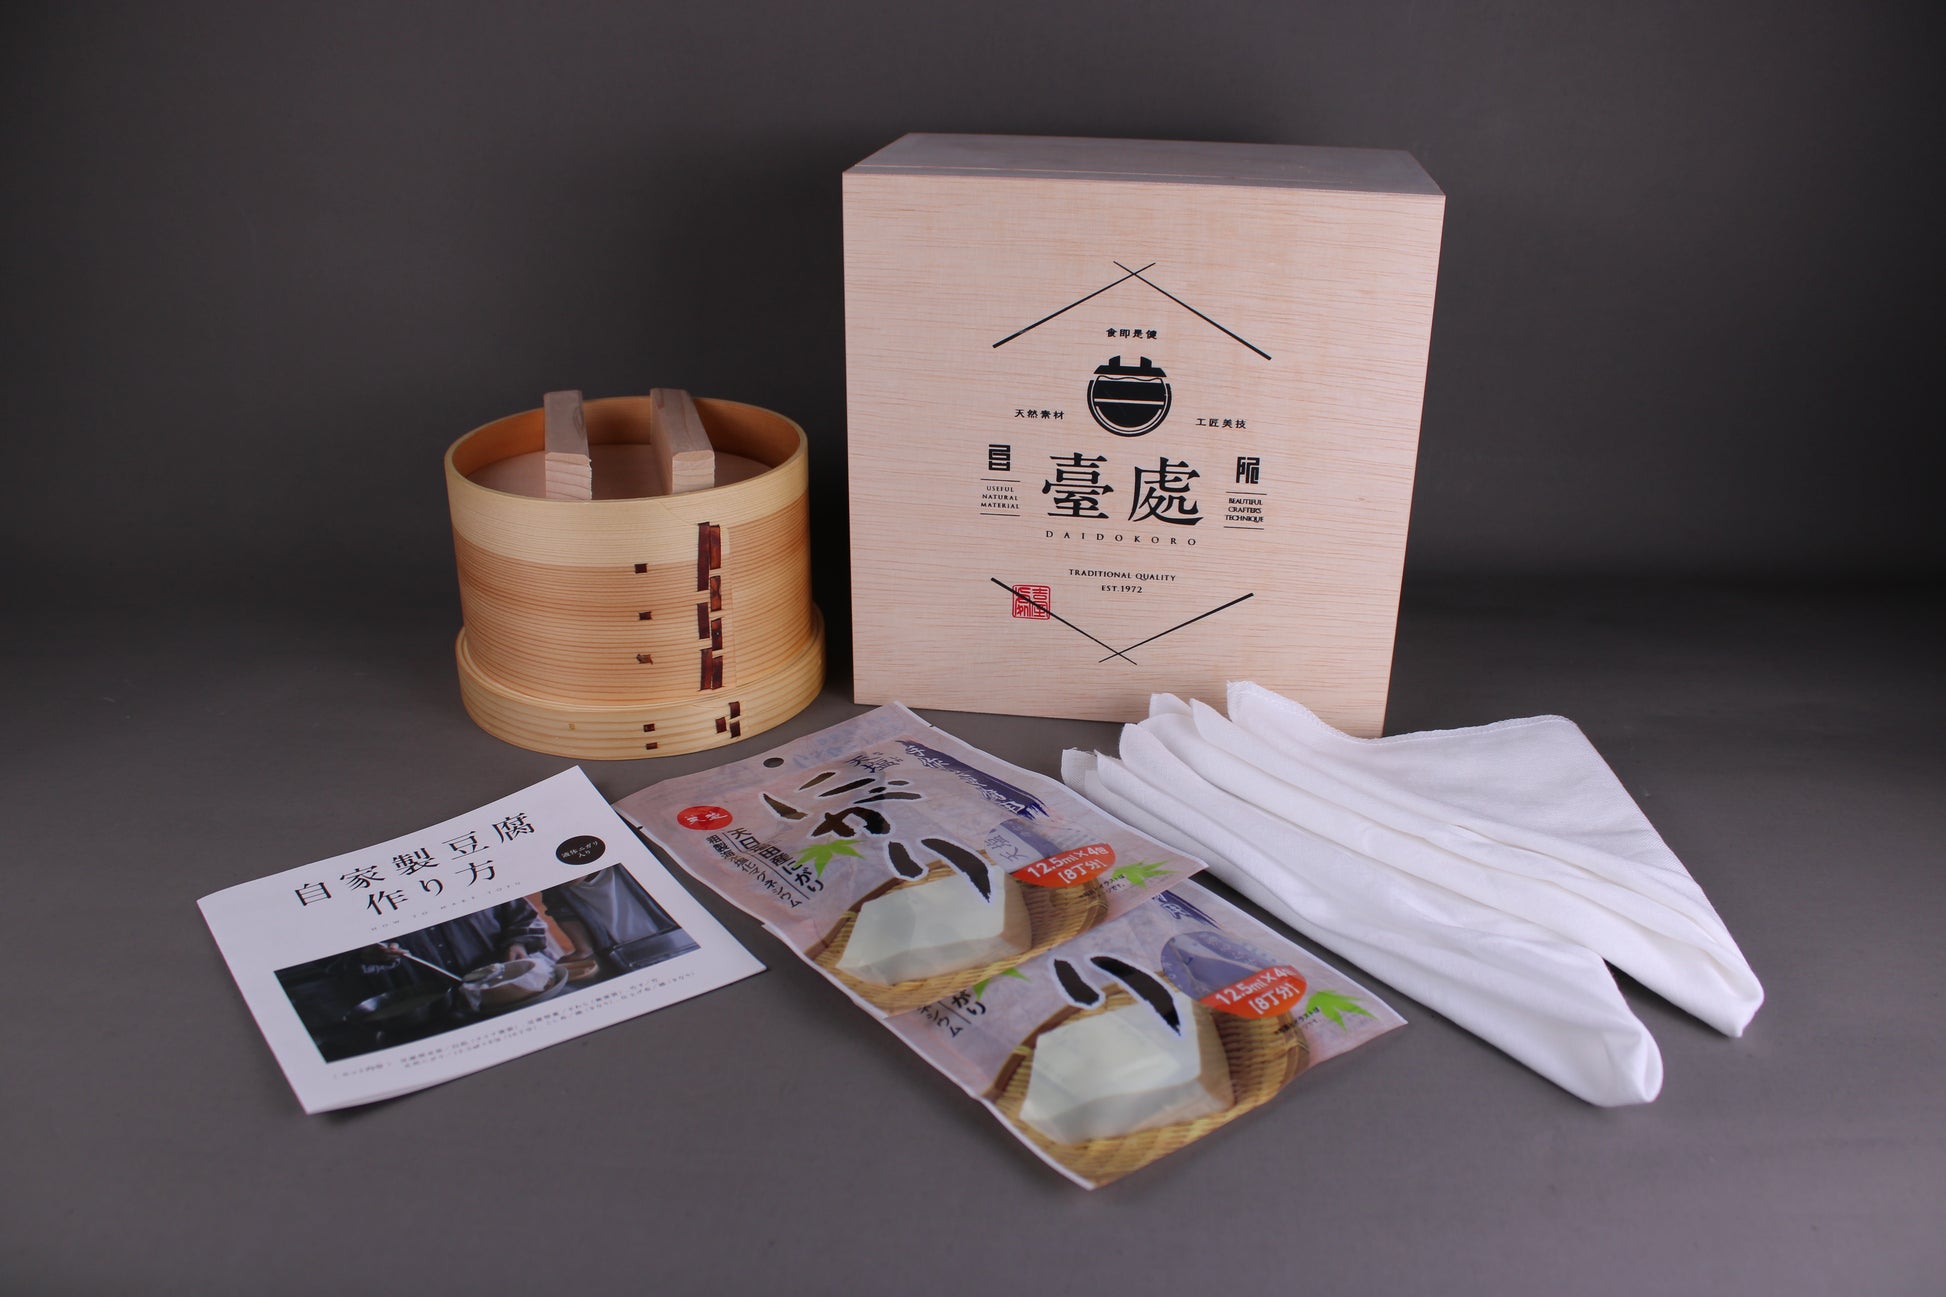 daidokoro paulownia wood gift box with wappa seiro tofu maker drop lid pamphlet bittern pouches straining cloth